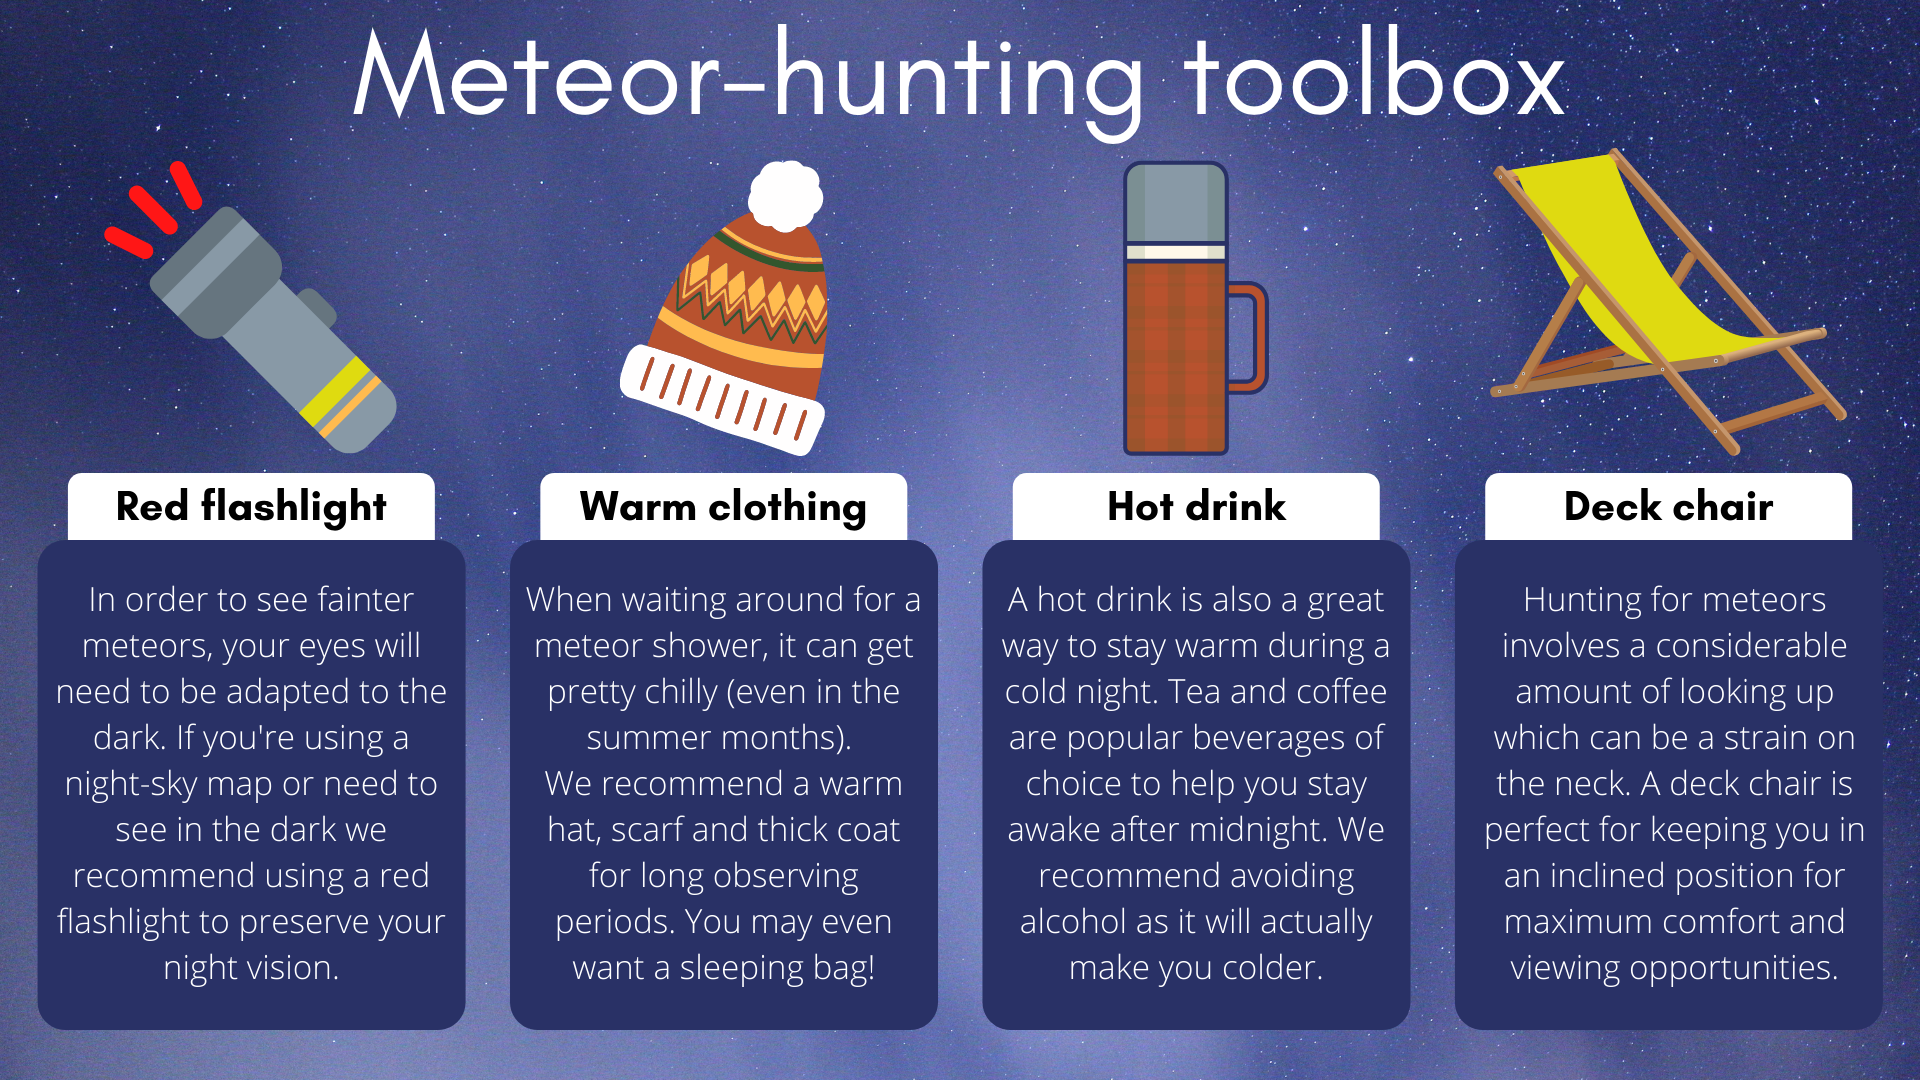 Mükemmel bir meteor avı deneyimi için referans bir el fenerine, kalın giysilere, sıcak bir içeceğe ve hoş bir şezlonga ihtiyacınız olacak.